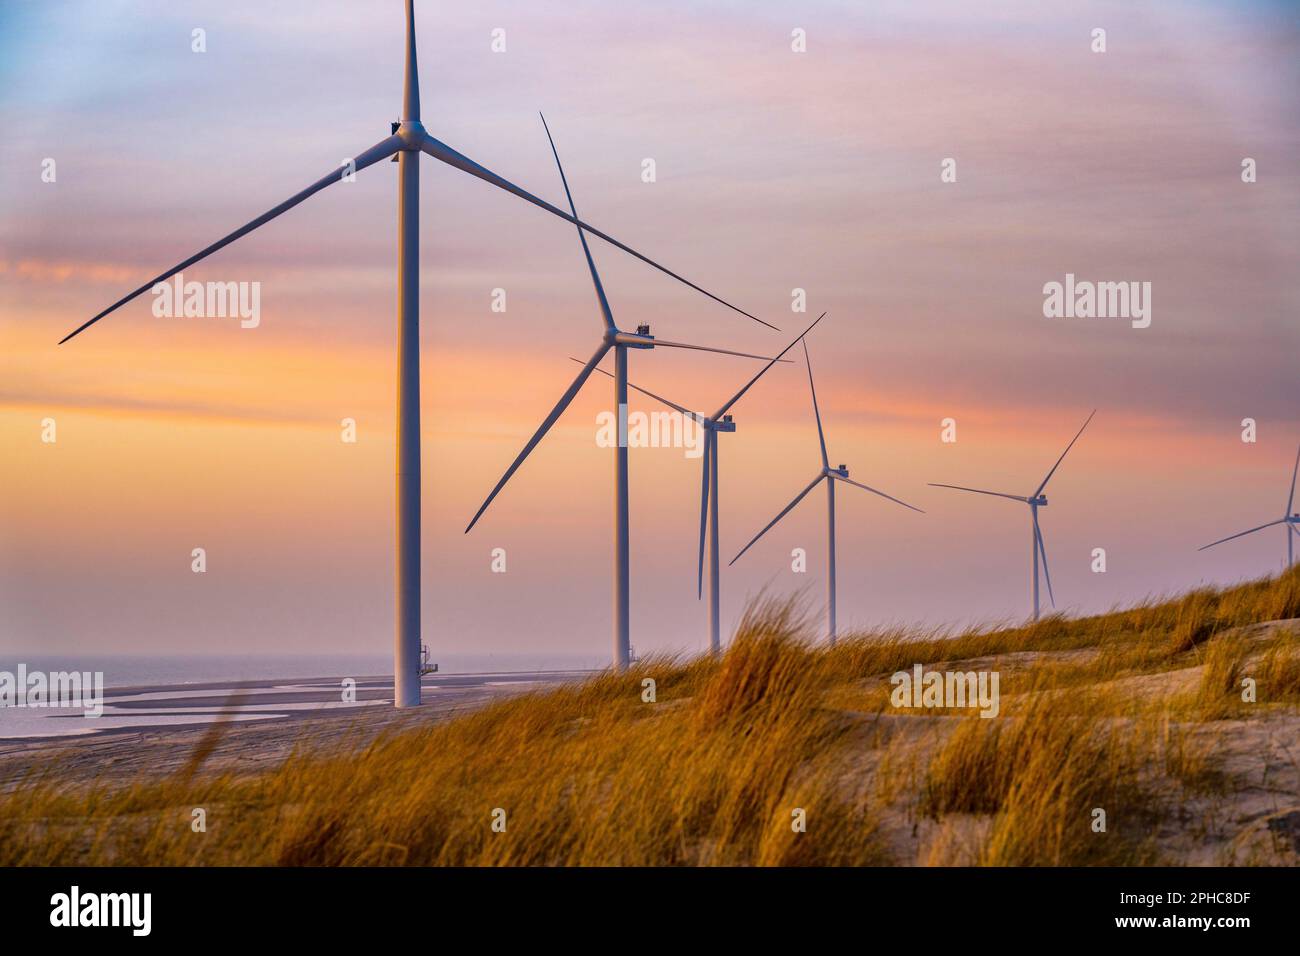 PARC éolien D'ENECO sur la digue autour du port Maasvlakte 2, 22 éoliennes d'une capacité de 116 mégawatts, coucher de soleil, Rotterdam, pays-Bas Banque D'Images